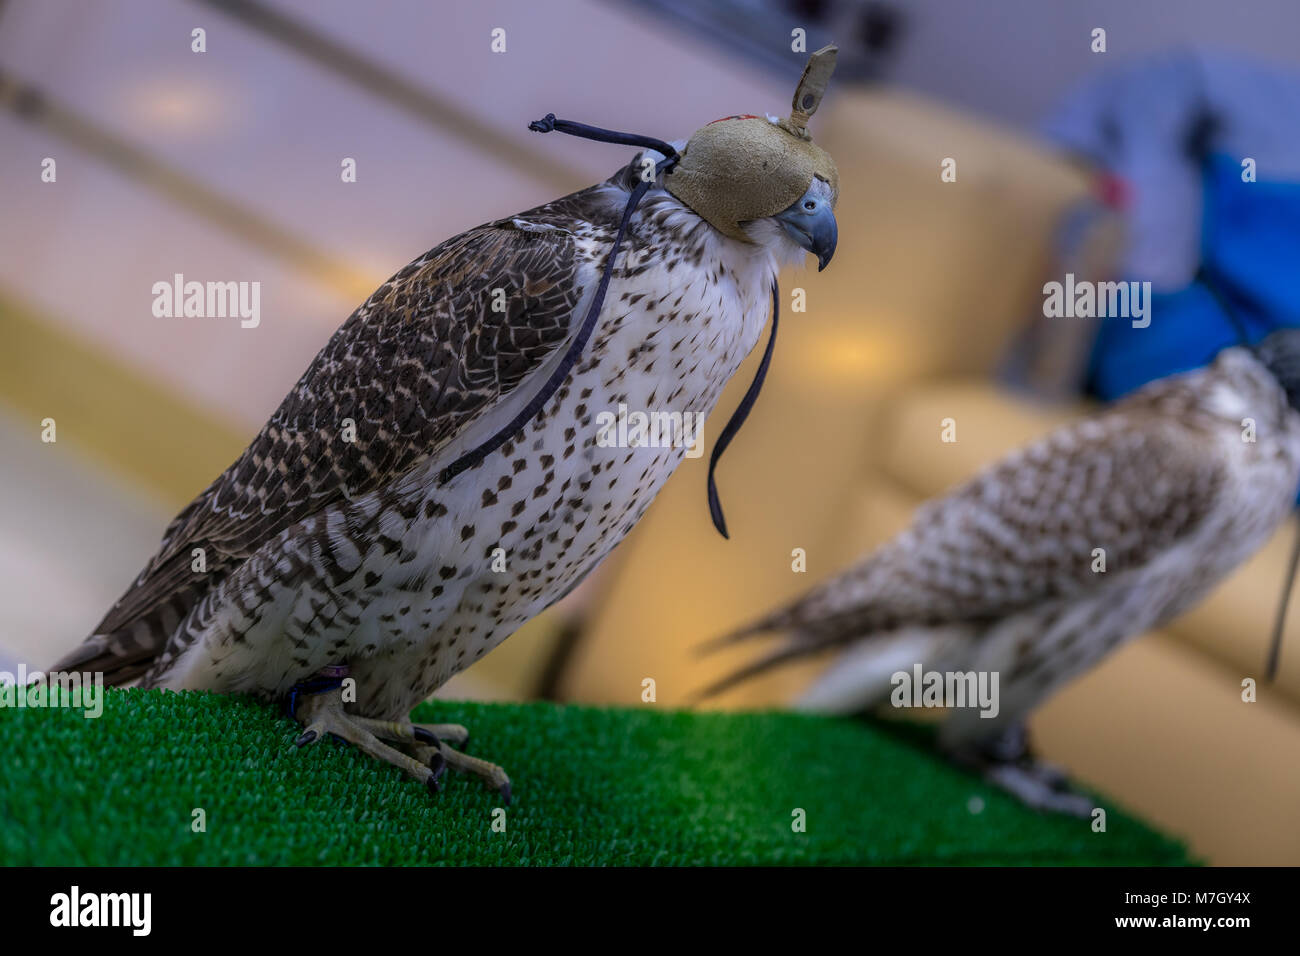 Abu Dhabi, UAE - Jan 11, 2018. De magnifiques oiseaux reste sur le stand avec cap sur la tête dans l'hôpital Falcon à Abu Dhabi Banque D'Images